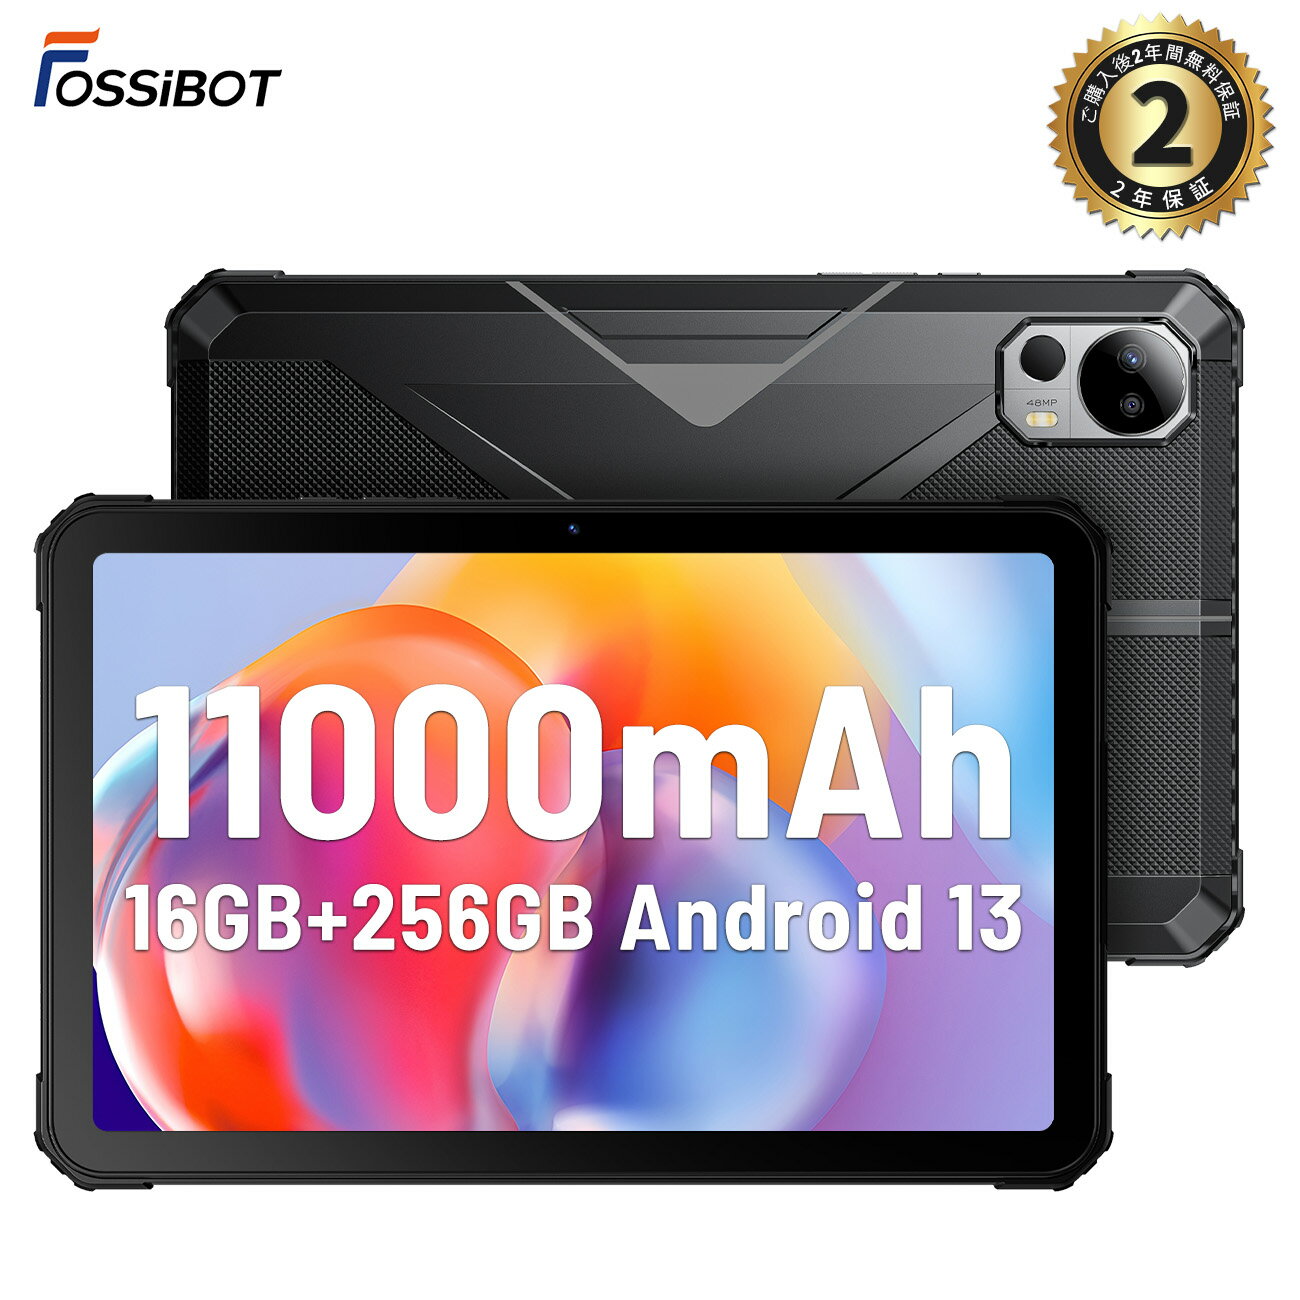 タブレット 【マラソン限定5%OFFクーポンあり 保護フィルム贈呈！】楽天3位 タブレット お風呂用 防水 耐衝撃 10.4 インチ 4つスピーカー 8コアCPU FOSSiBOT DT1 11000mAh 2K FHD+大画面 Android 13 タブレット 16GB+256GB（1TB拡張可）48MP+16MPカメラ 防水 防塵 送料無料